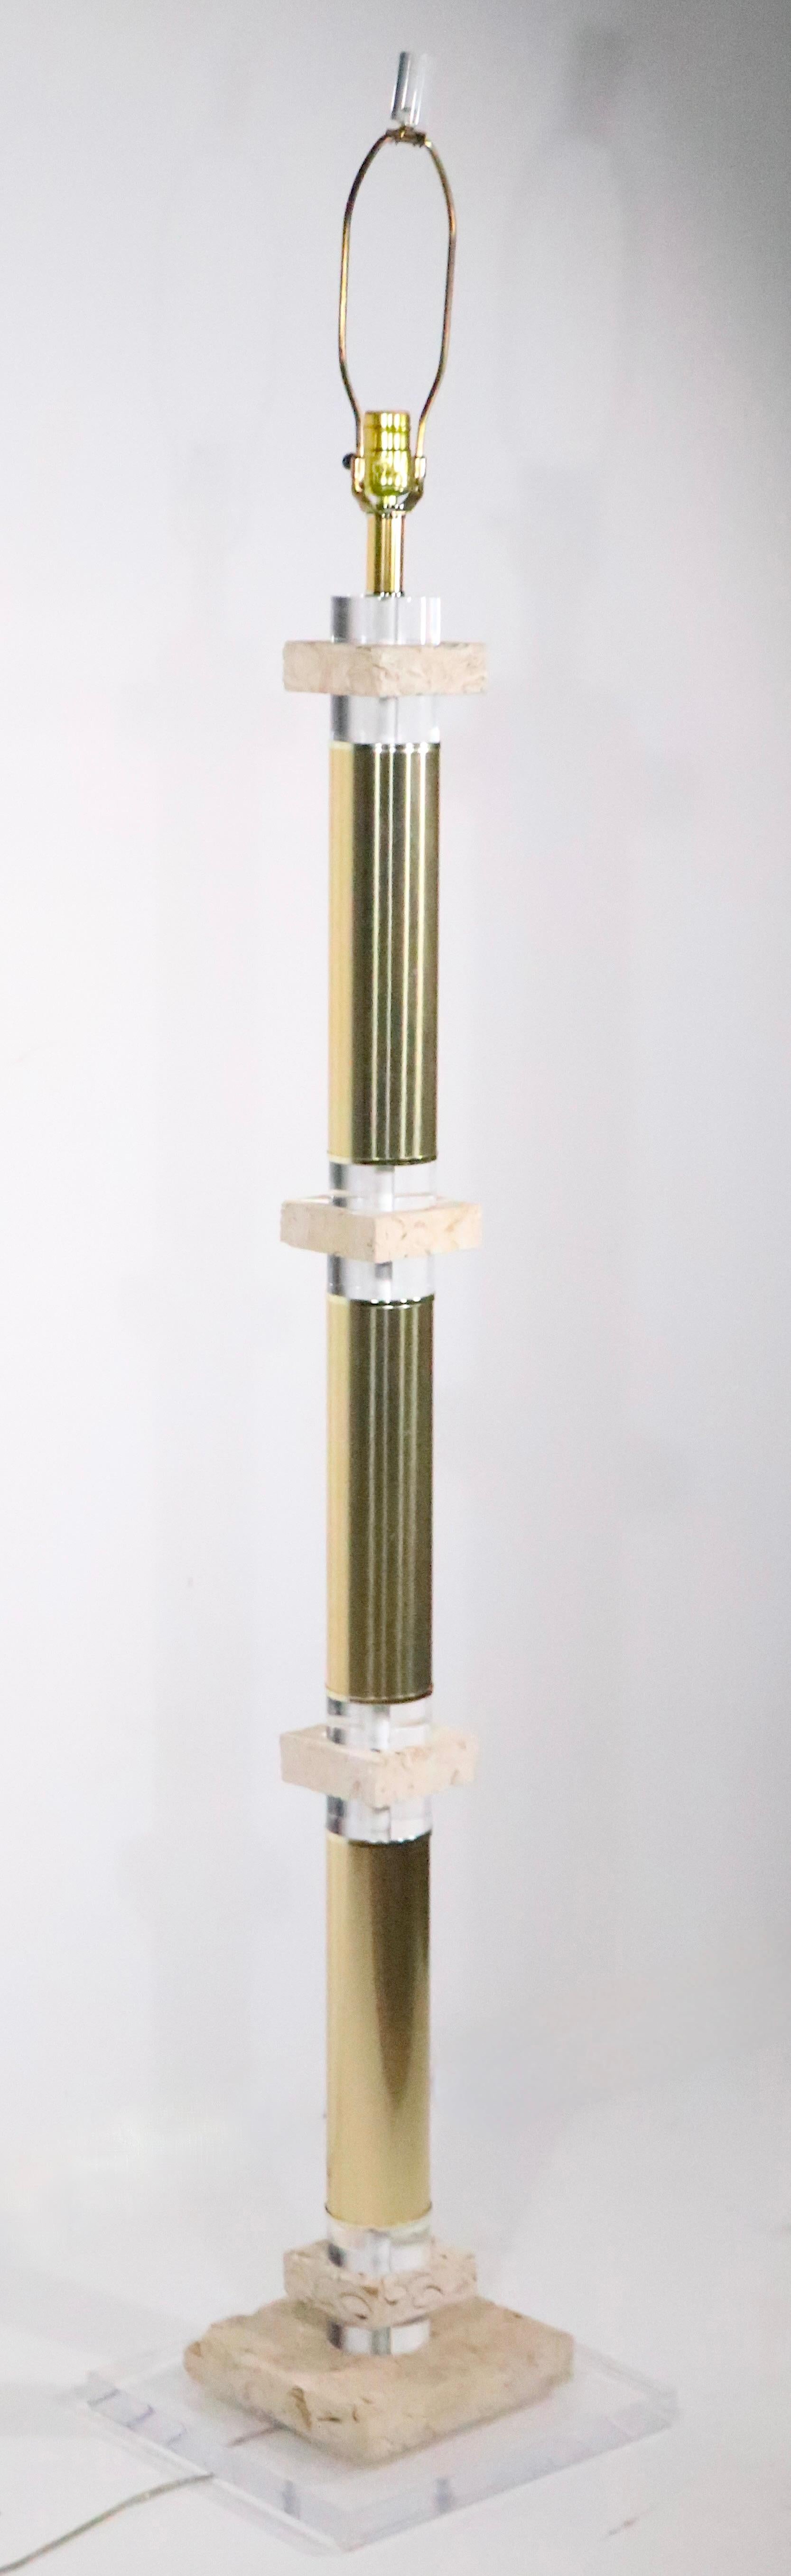 Außergewöhnliche Stehlampe im Hollywood-Florida-Regency-Stil aus röhrenförmigem Messing mit Abstandshaltern aus gegossenem Lucit und versteinertem Stein. Die Lampe ist in sehr gutem, originalem, funktionierendem Zustand,  sauberer und